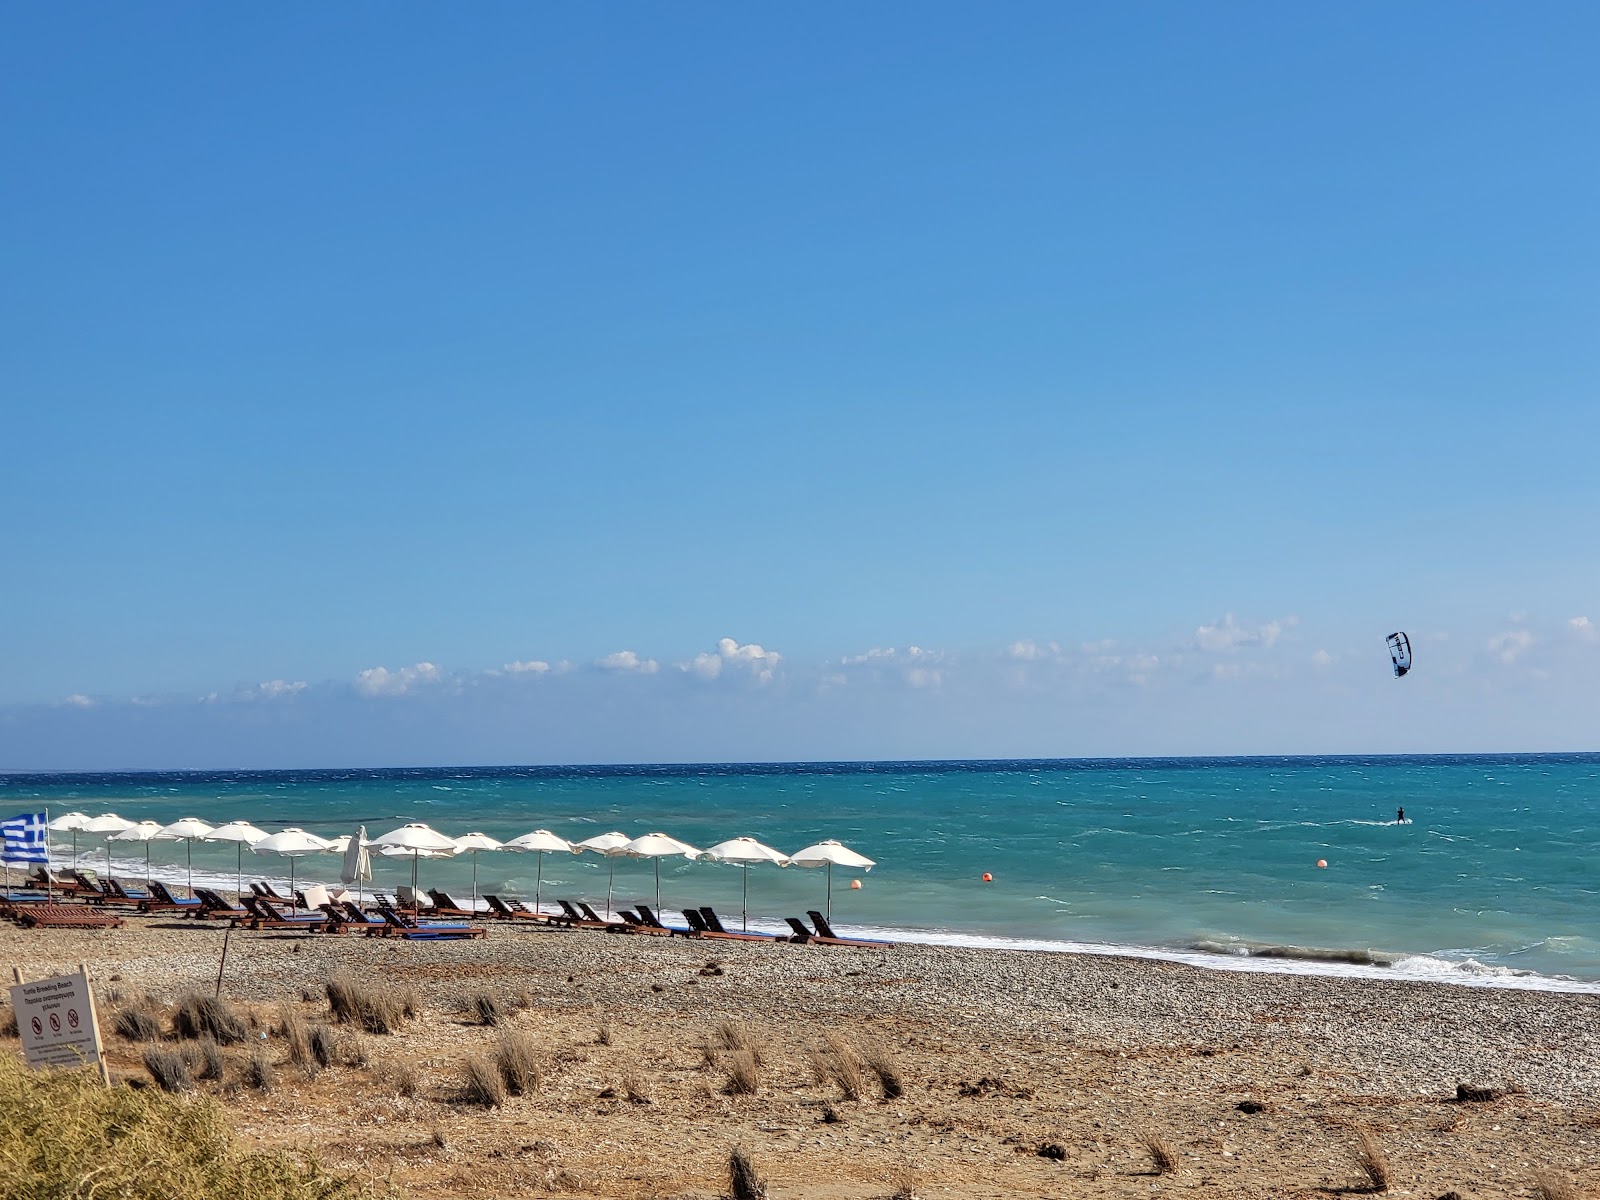 Zdjęcie Wild Milanda beach II - popularne miejsce wśród znawców relaksu